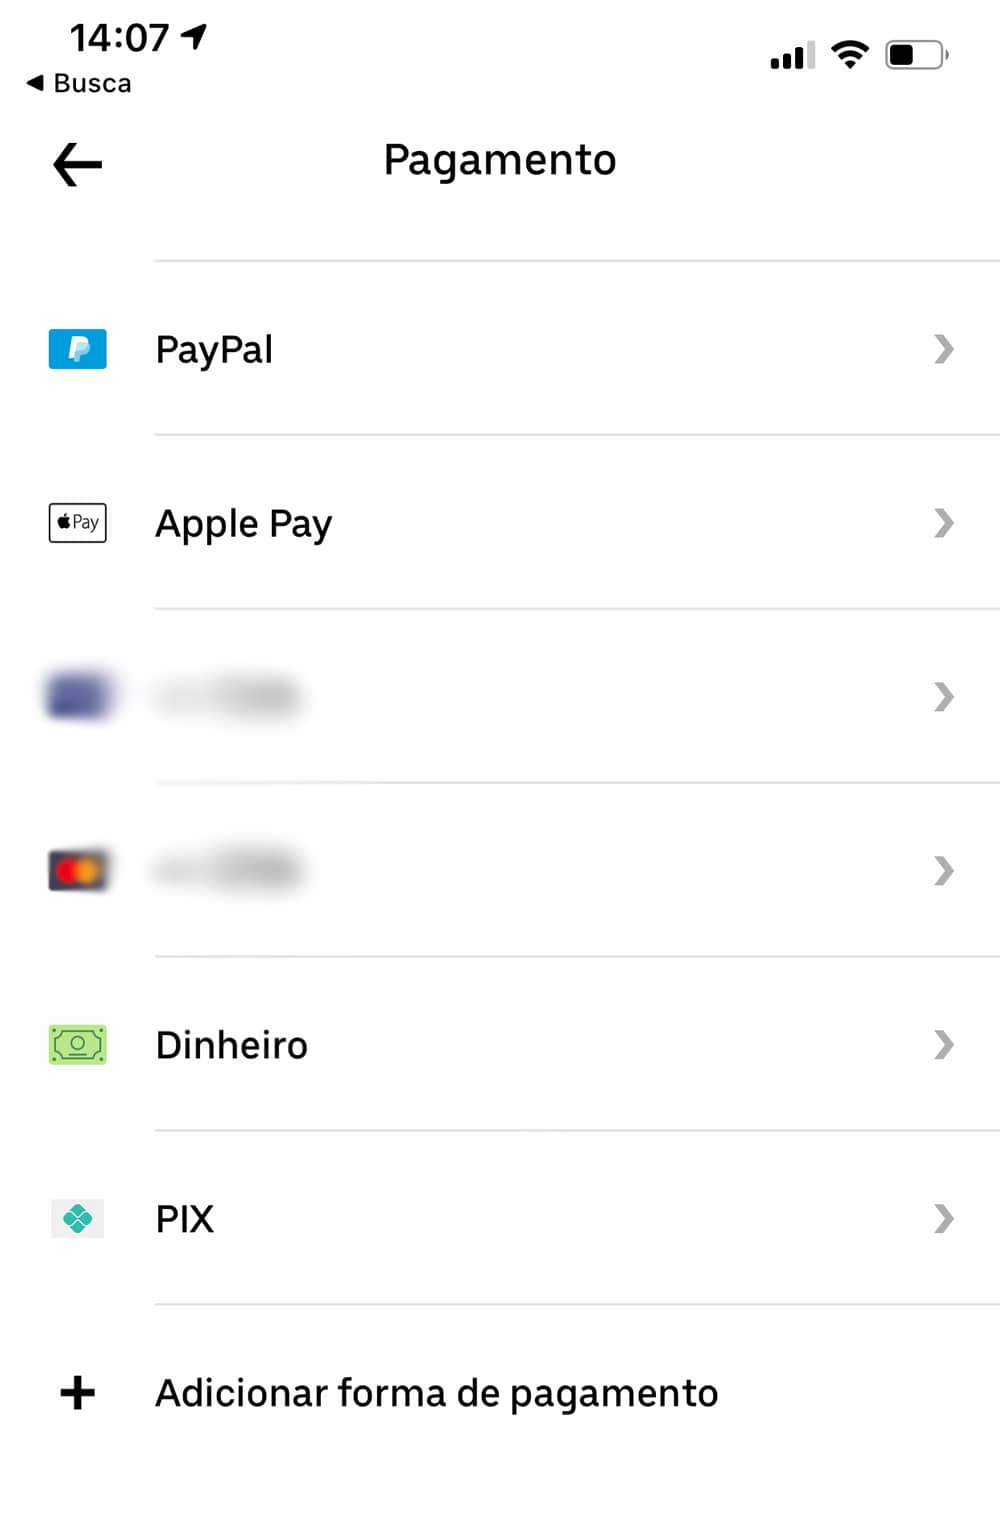 tela de pagamento do uber, com opção de pagar pelo Pix